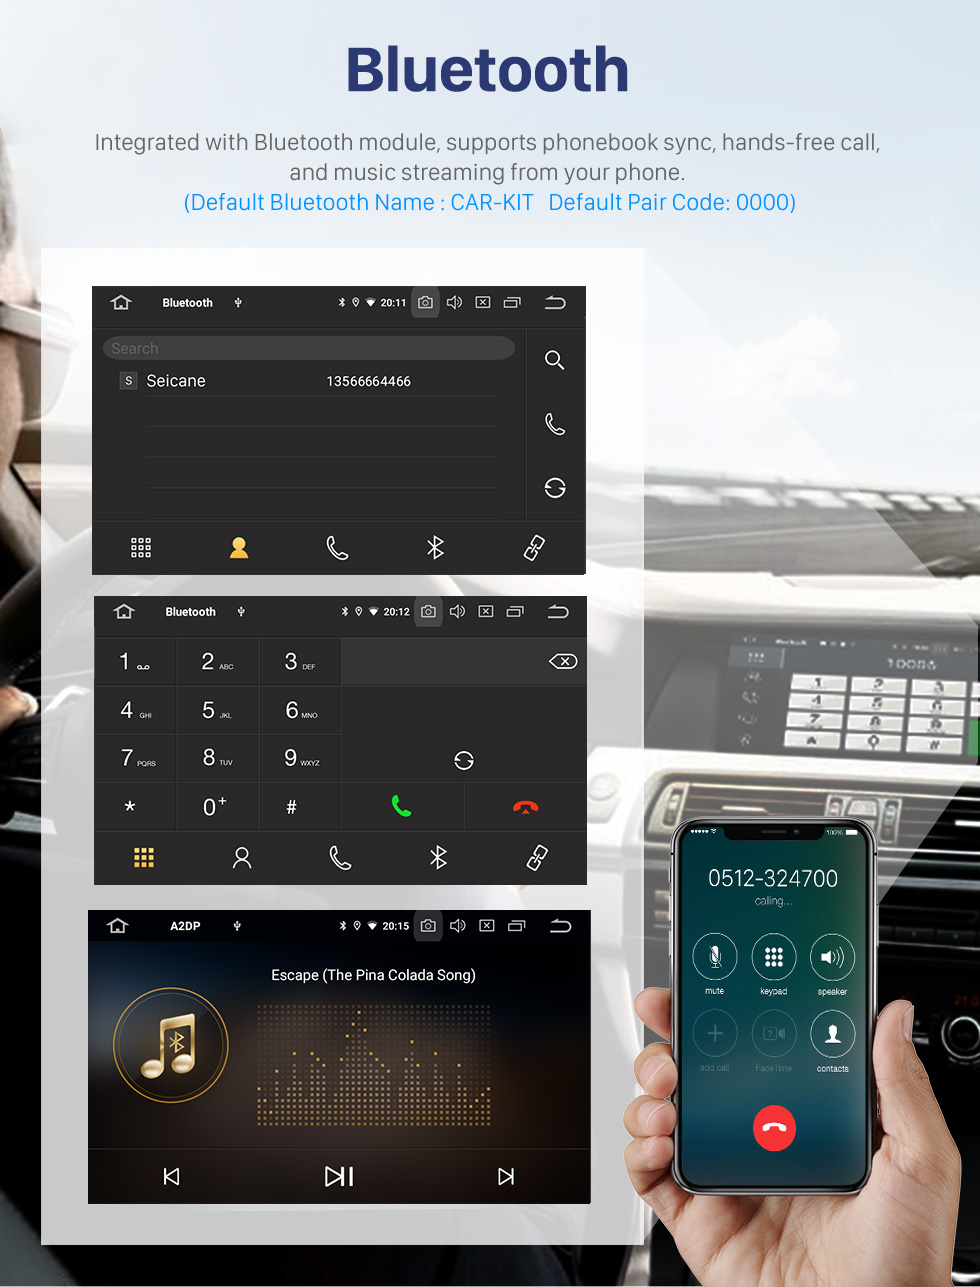 Seicane 10,1 pouces Android 10.0 pour 2002 2003 2004 Mercedes Benz Classe C W203 Radio Navigation GPS avec écran tactile HD Prise en charge Bluetooth Carplay DVR